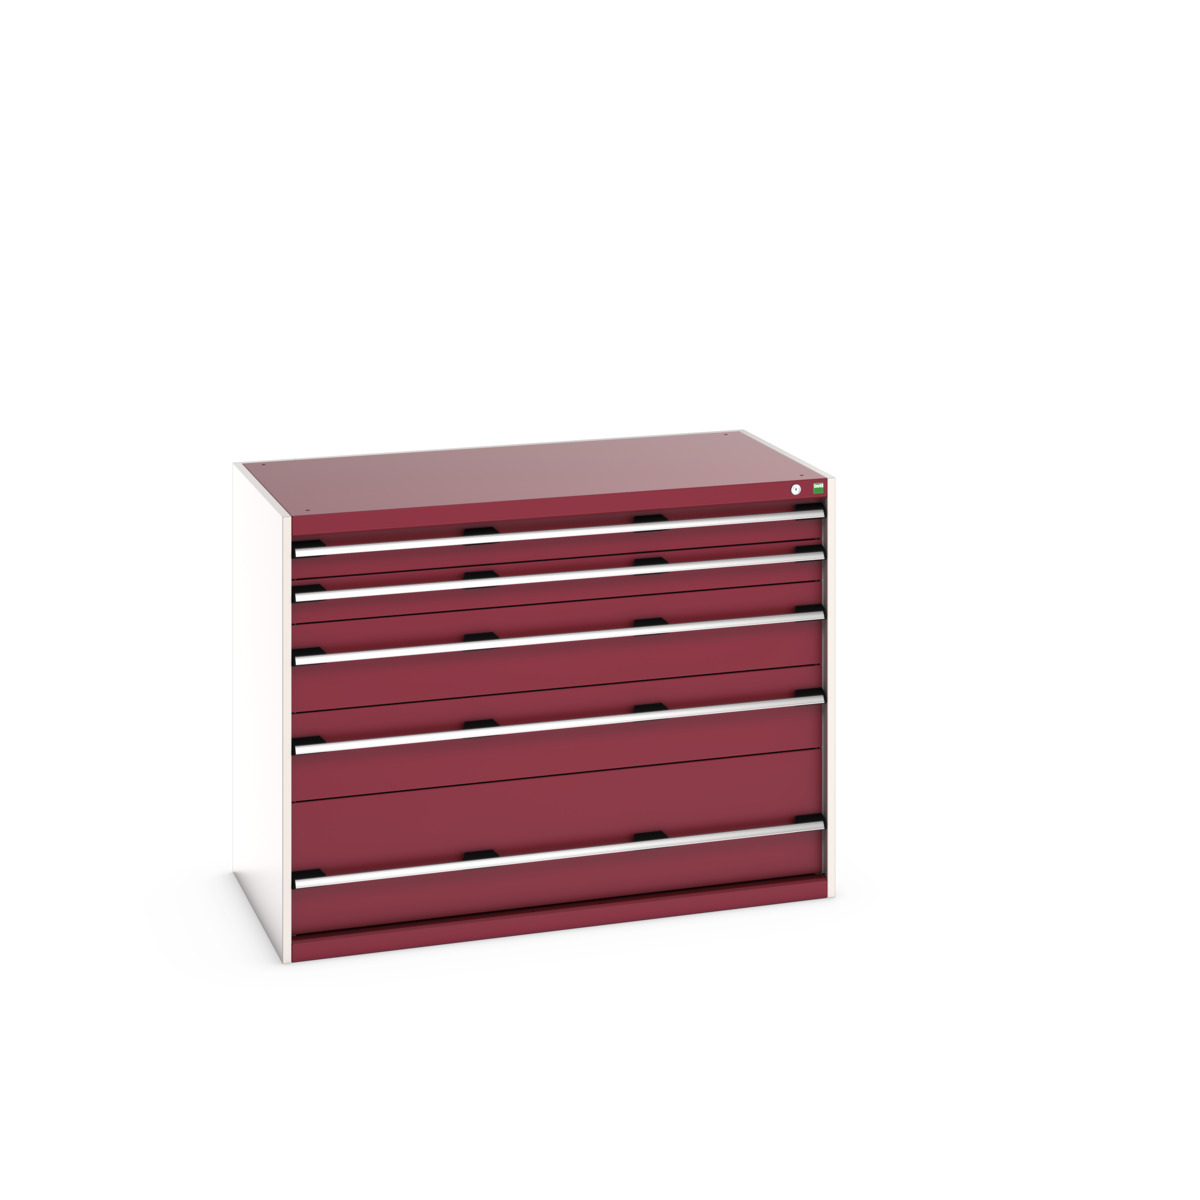 40030091.24V - cubio drawer cabinet